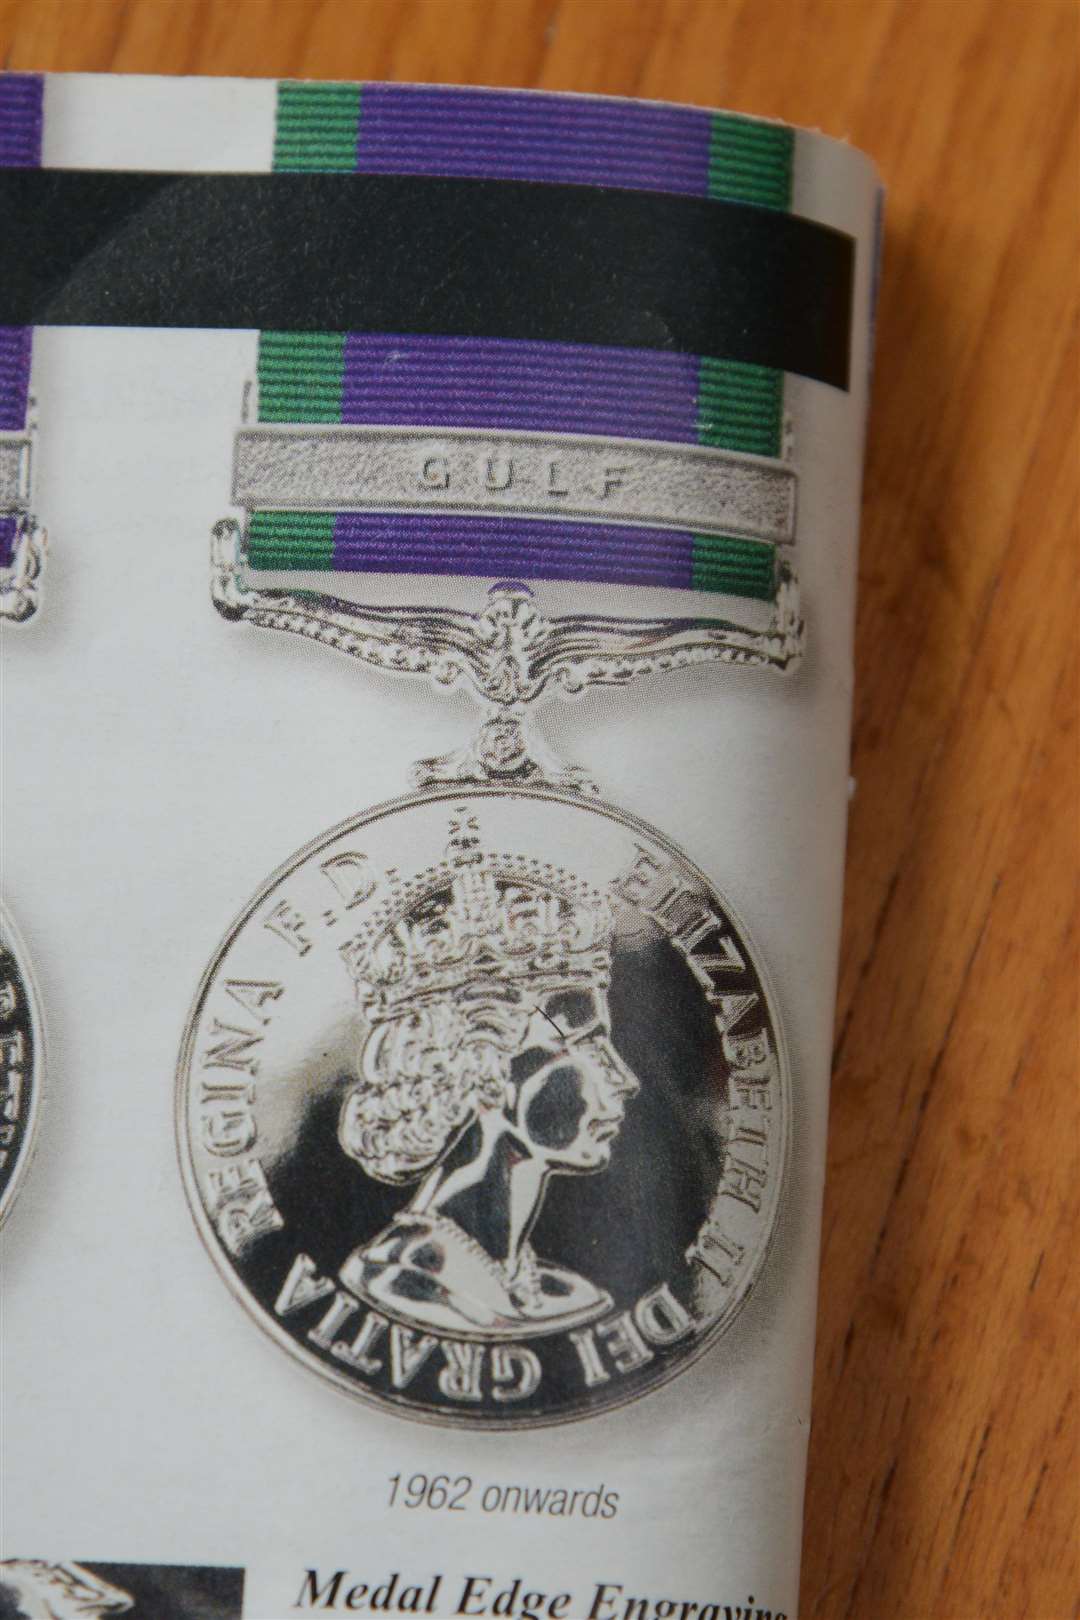 The stolen service medal belonging to Mr Salter